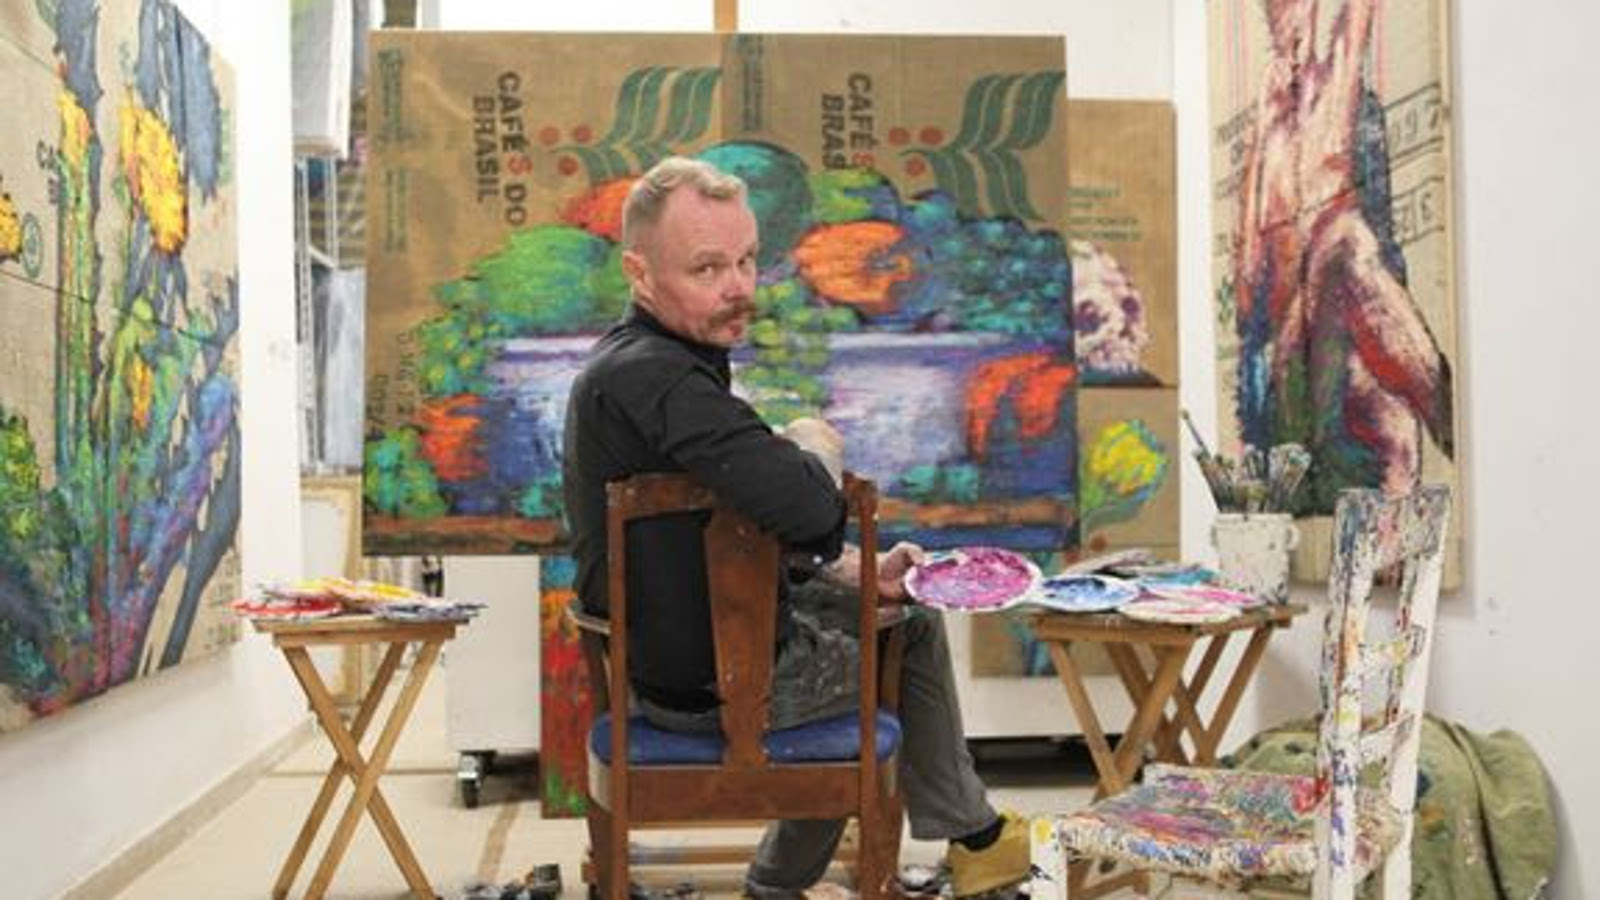 Kuvassa on Hannu Palosuo on istumassa ja tekee taideteosta.  Hän on kääntyneenä katsojaan päin.  Seinillä hänen ympärillään on taideteoksia.